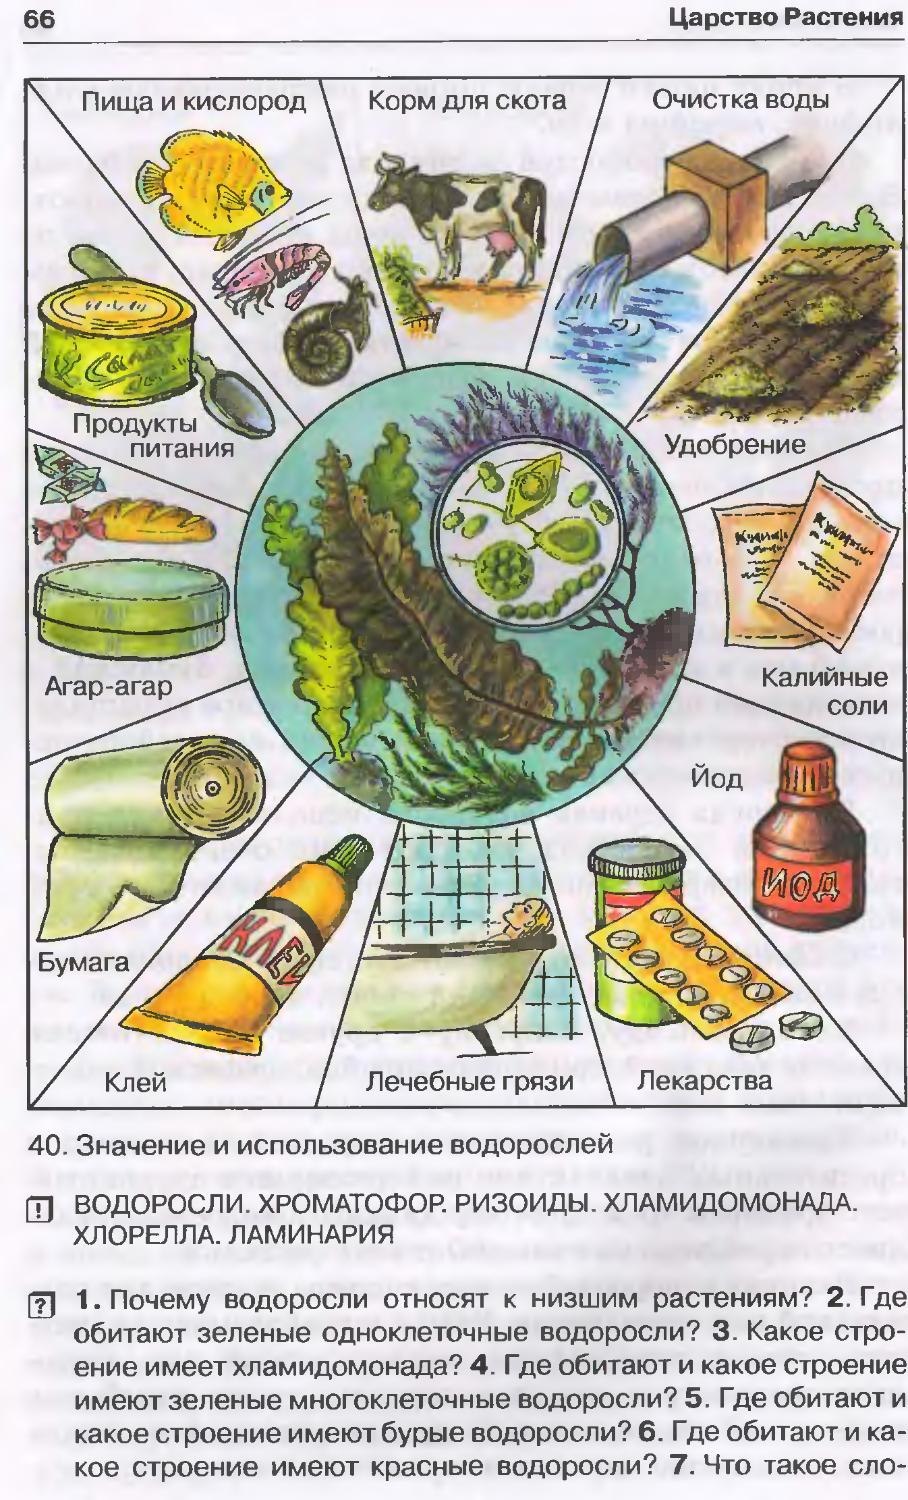 Значение растений водорослей. Значение и использование водорослей. Роль водорослей в природе и жизни человека 5 класс биология. Схема использования водорослей. Схема использования водорослей человеком.